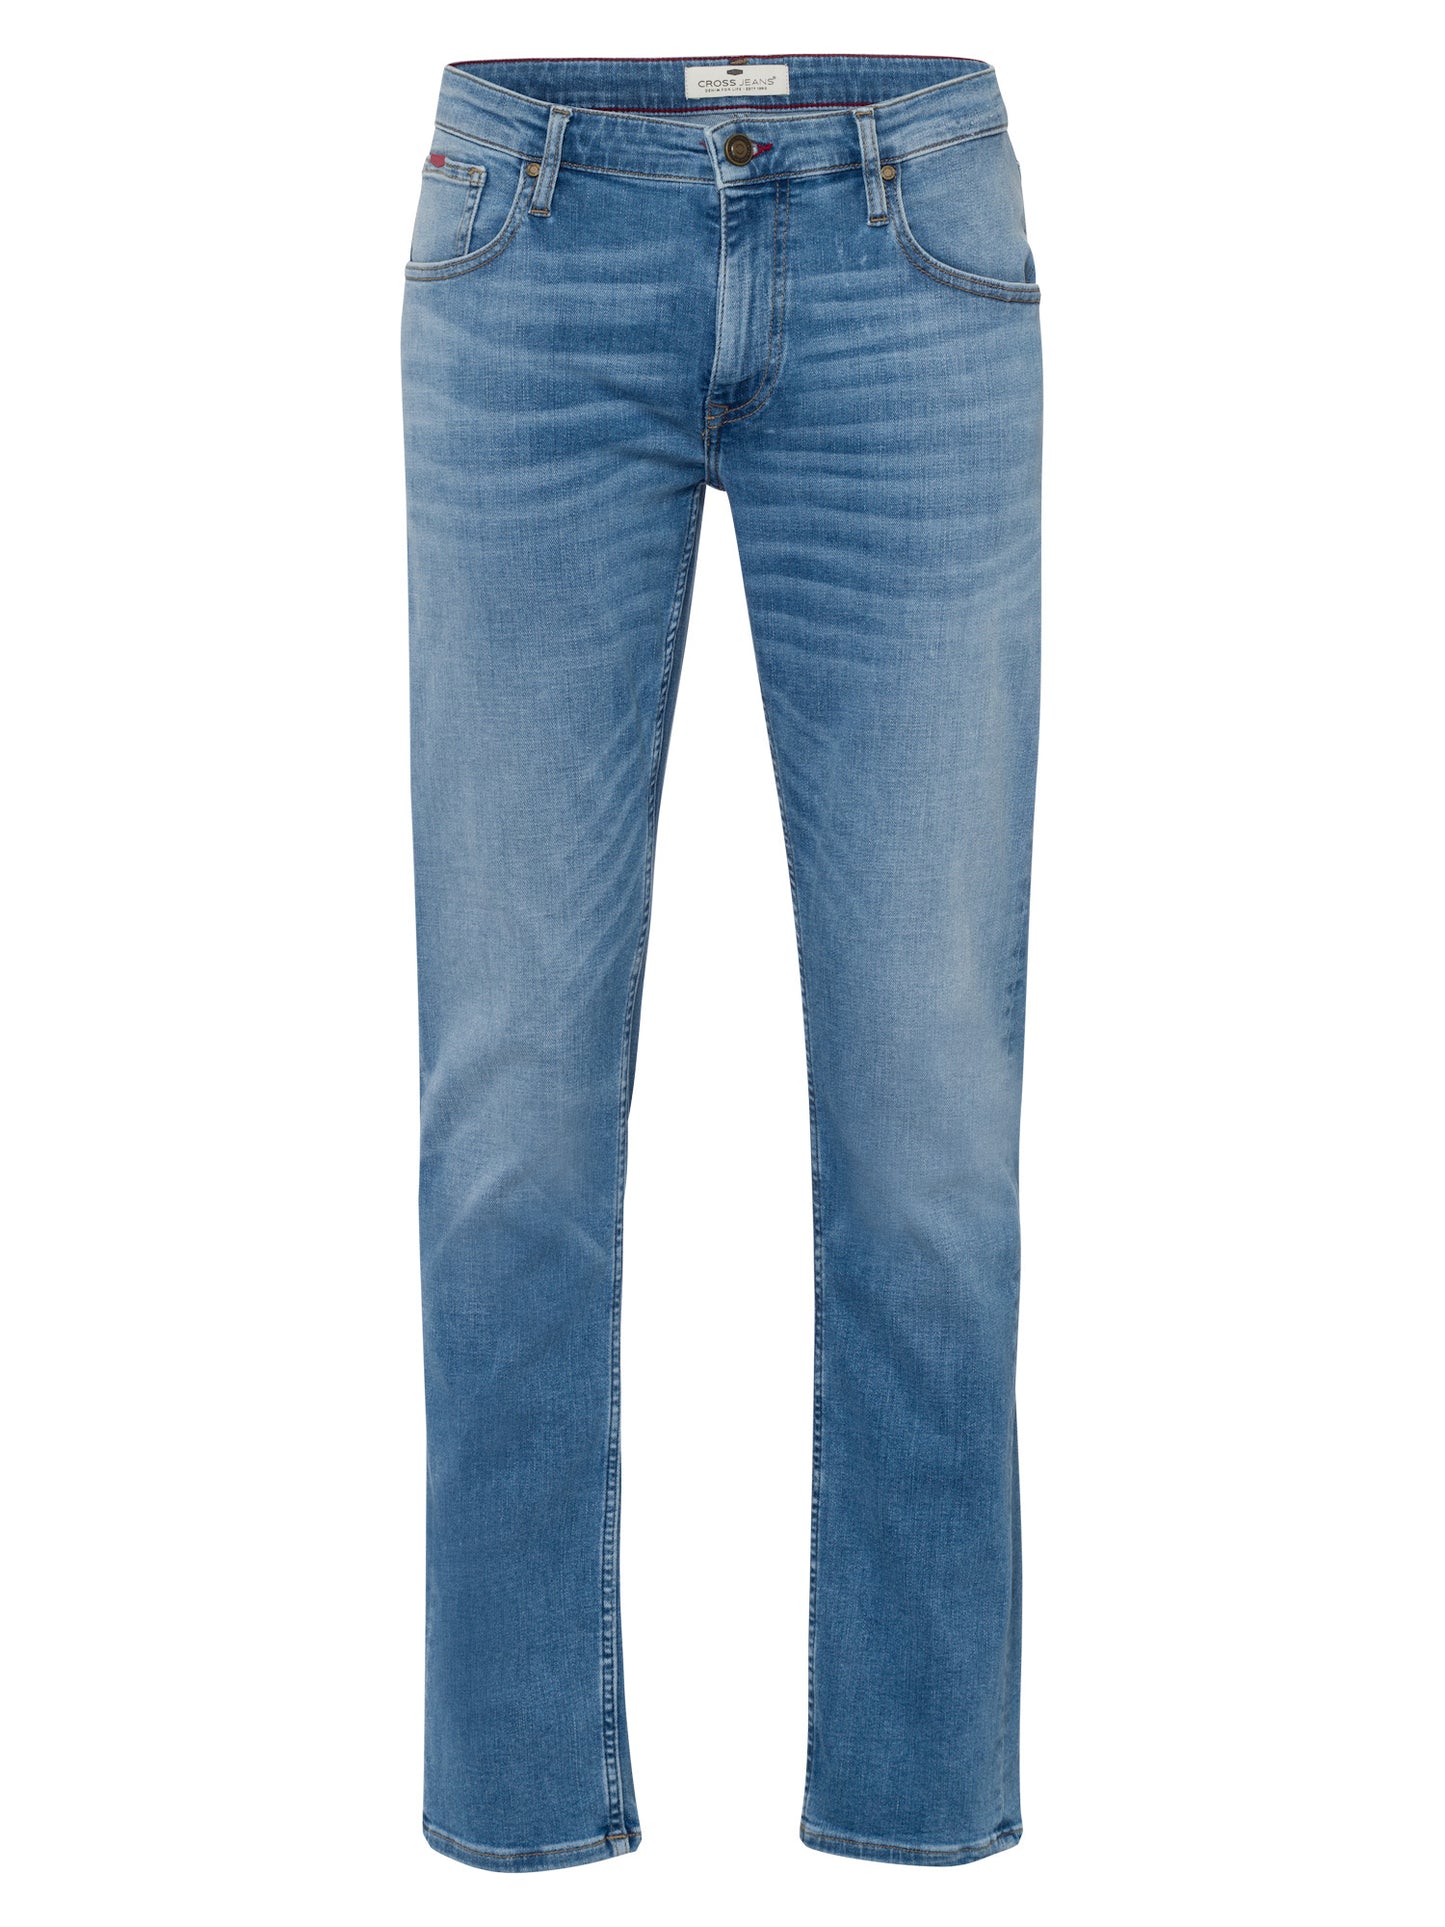 Damien Men's Jeans Slim Fit Regular Waist Straight Leg Light Blue